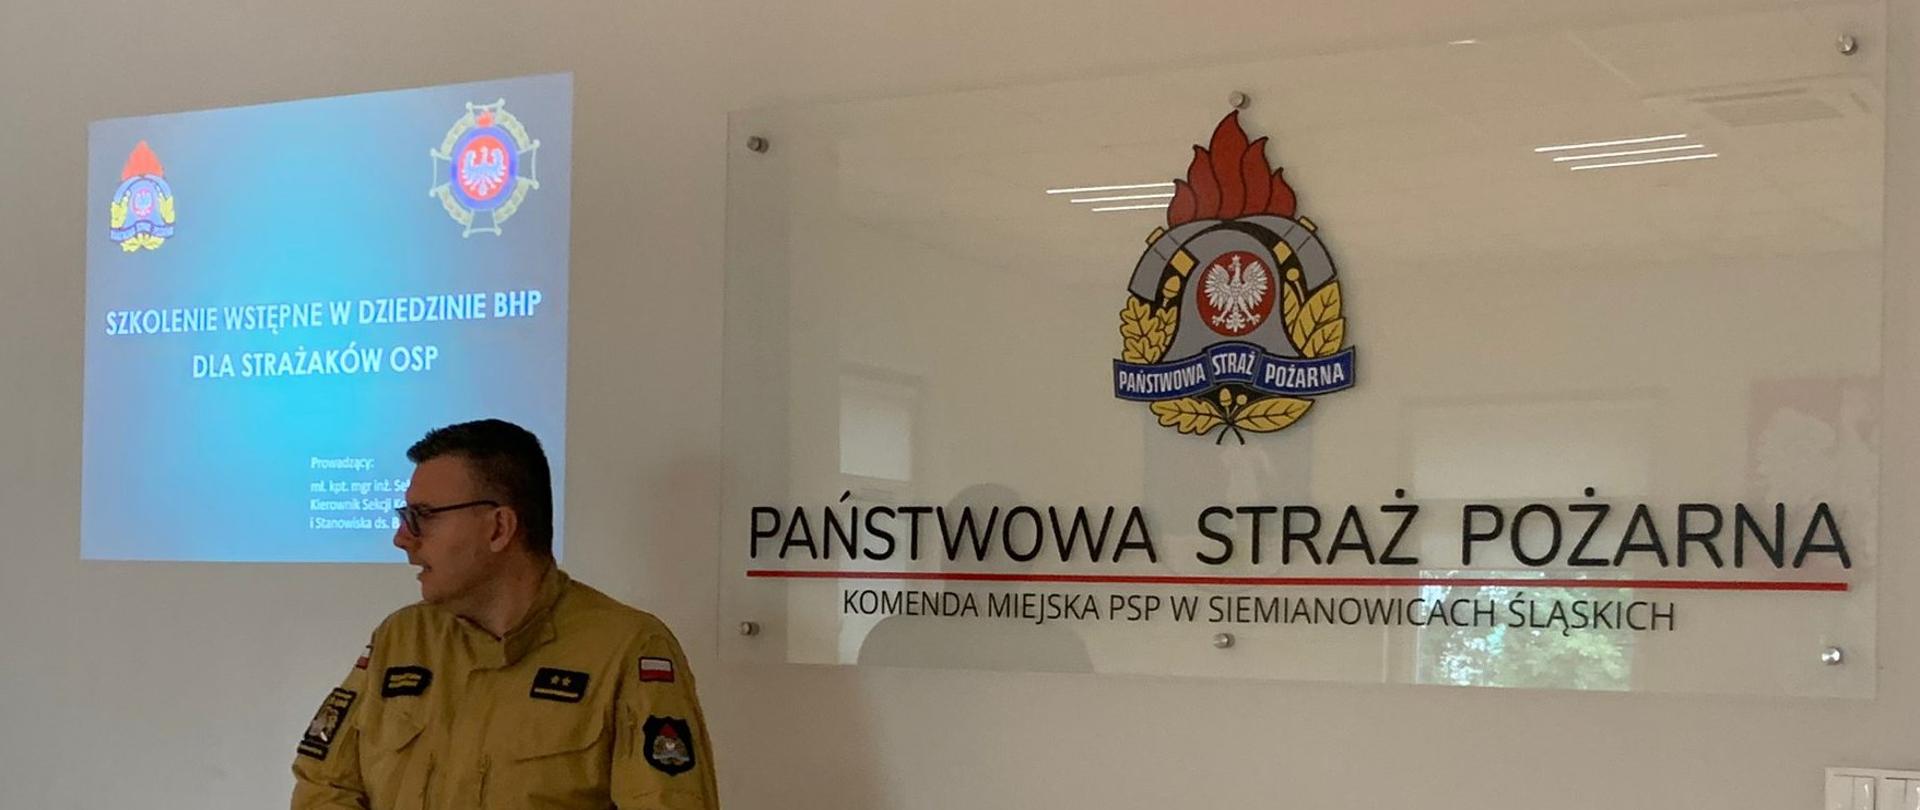 Mł. kpt. Sebastian Karpiński podczas zajęć prowadzonych podczas szkolenia podstawowego strażaków ratowników Ochotniczych Straży Pożarnych. Na tle od lewej strony treści szkolenia wstępnego BHP. Od prawej strony na ścianie logo PSP. 